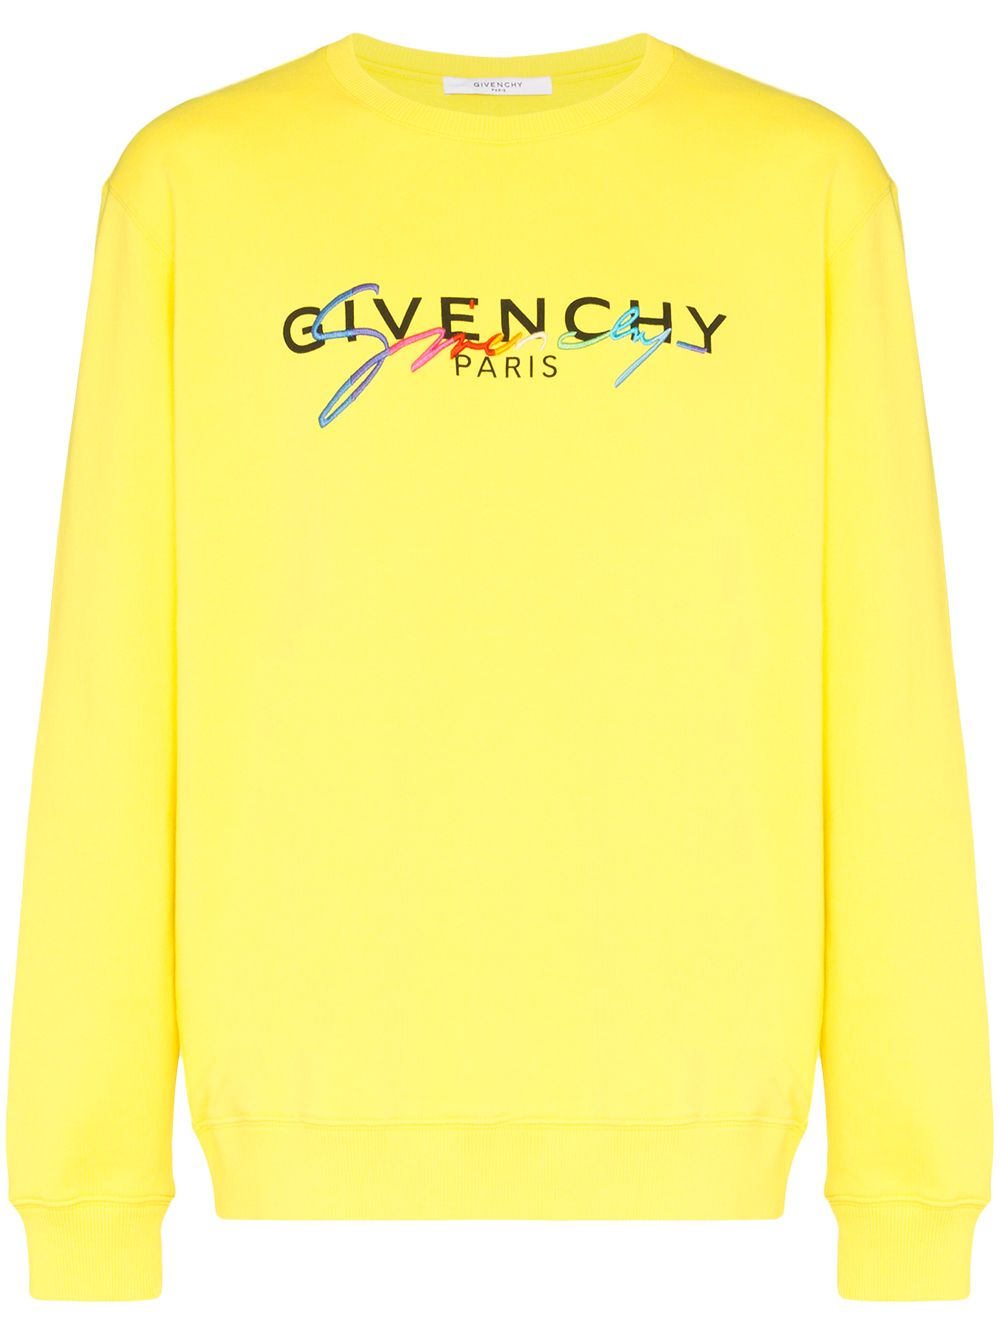 фото Givenchy толстовка с вышитым логотипом